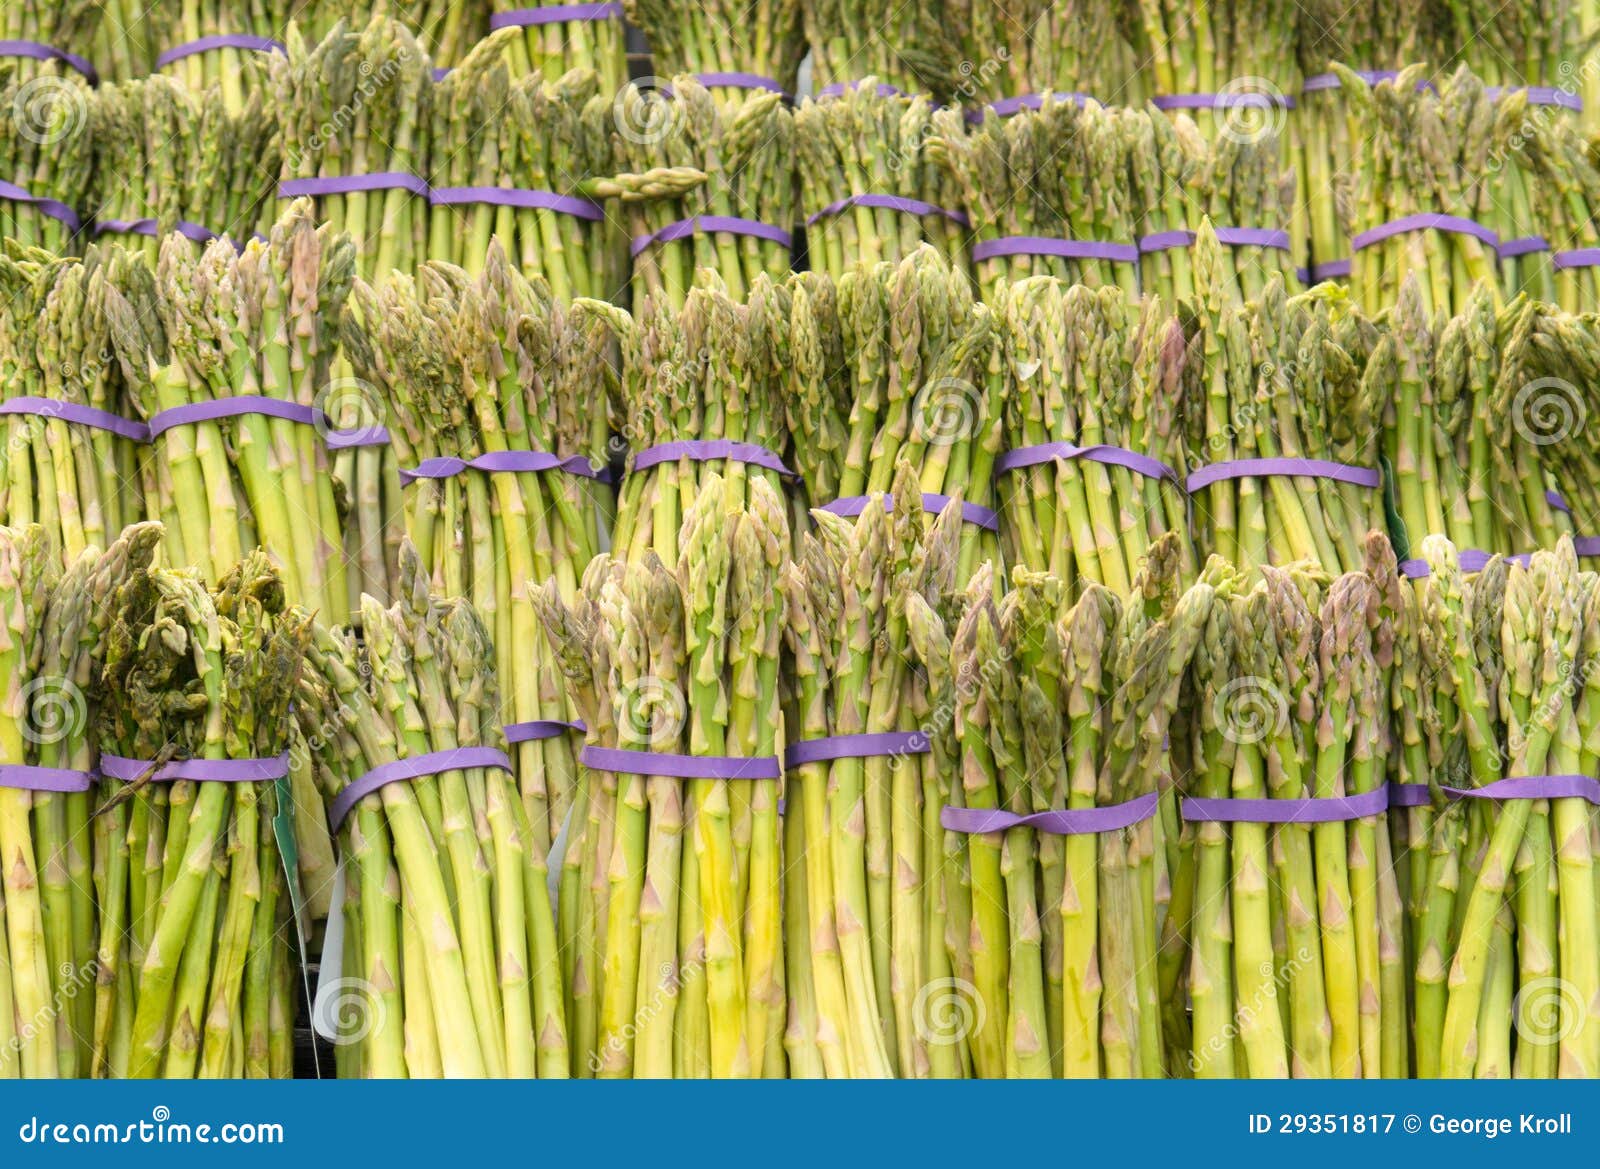 rows of asparagus